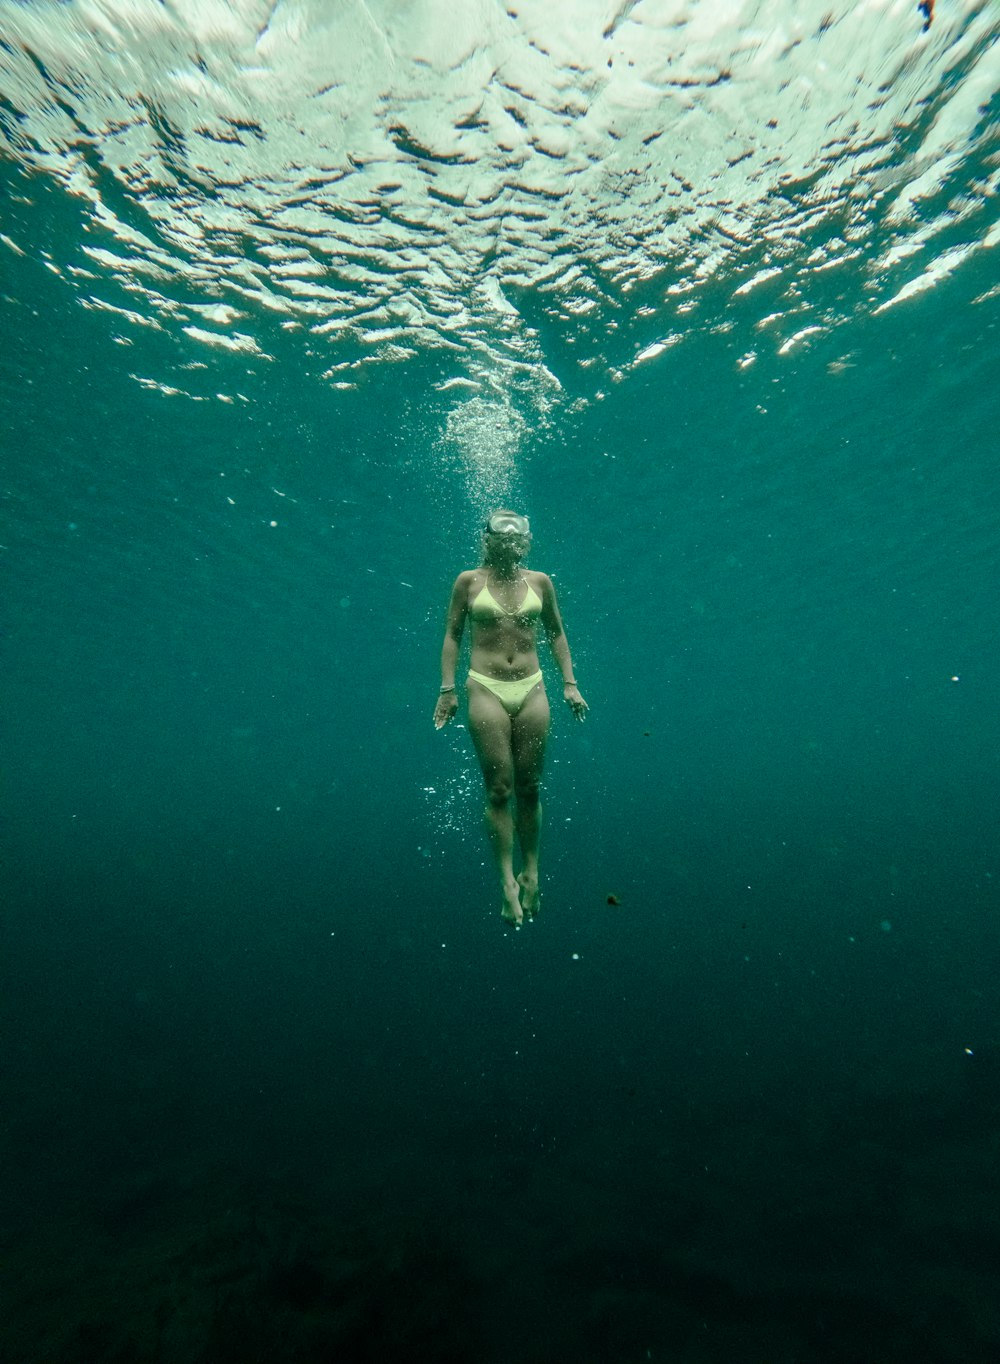 a woman in a bikini swims under the water